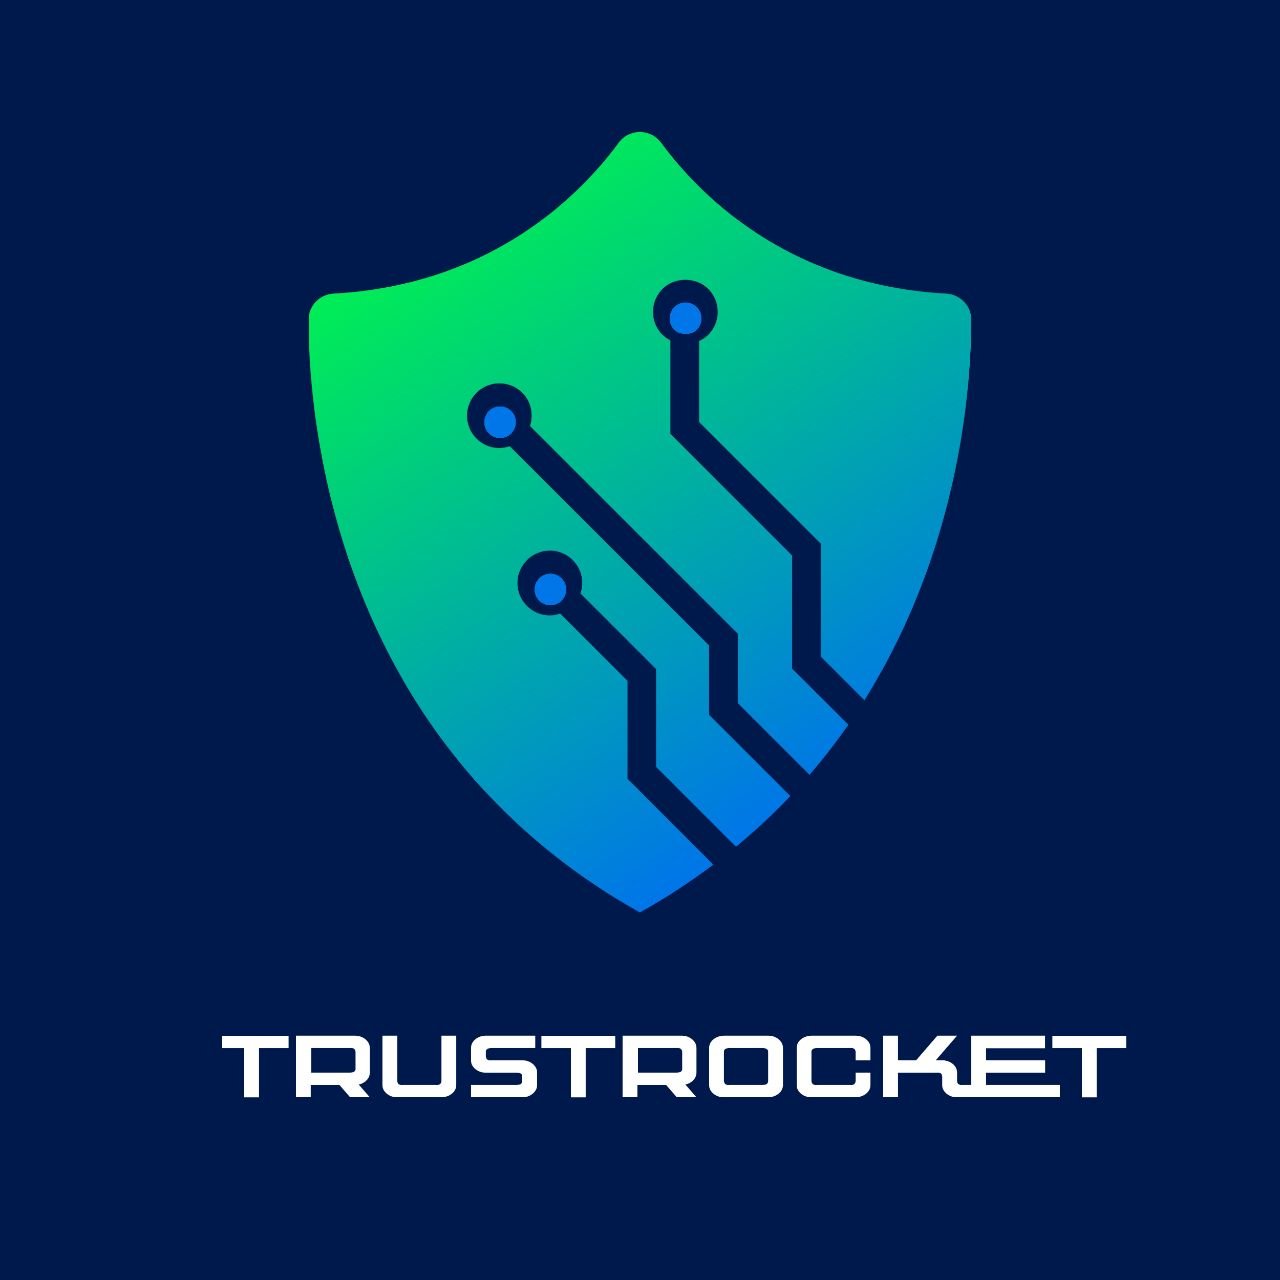 trustrocket.net